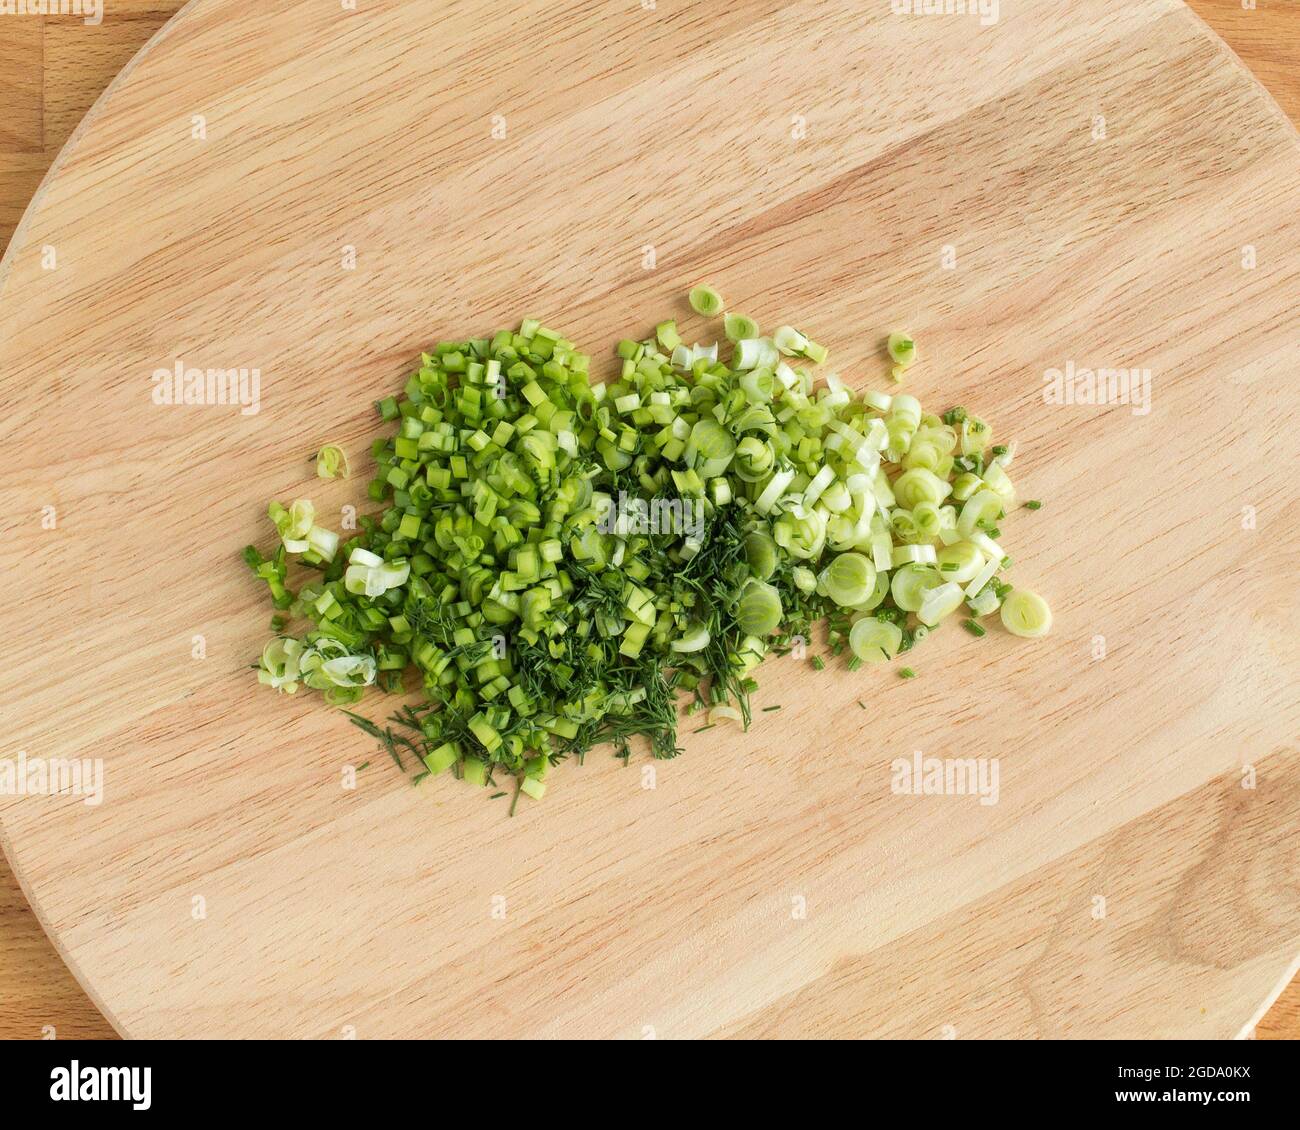 Tranches d'oignons verts sur une planche à découper. Léger, vif, pas de personne, personne, jour, jour, nourriture, cuisine, cuisine Banque D'Images